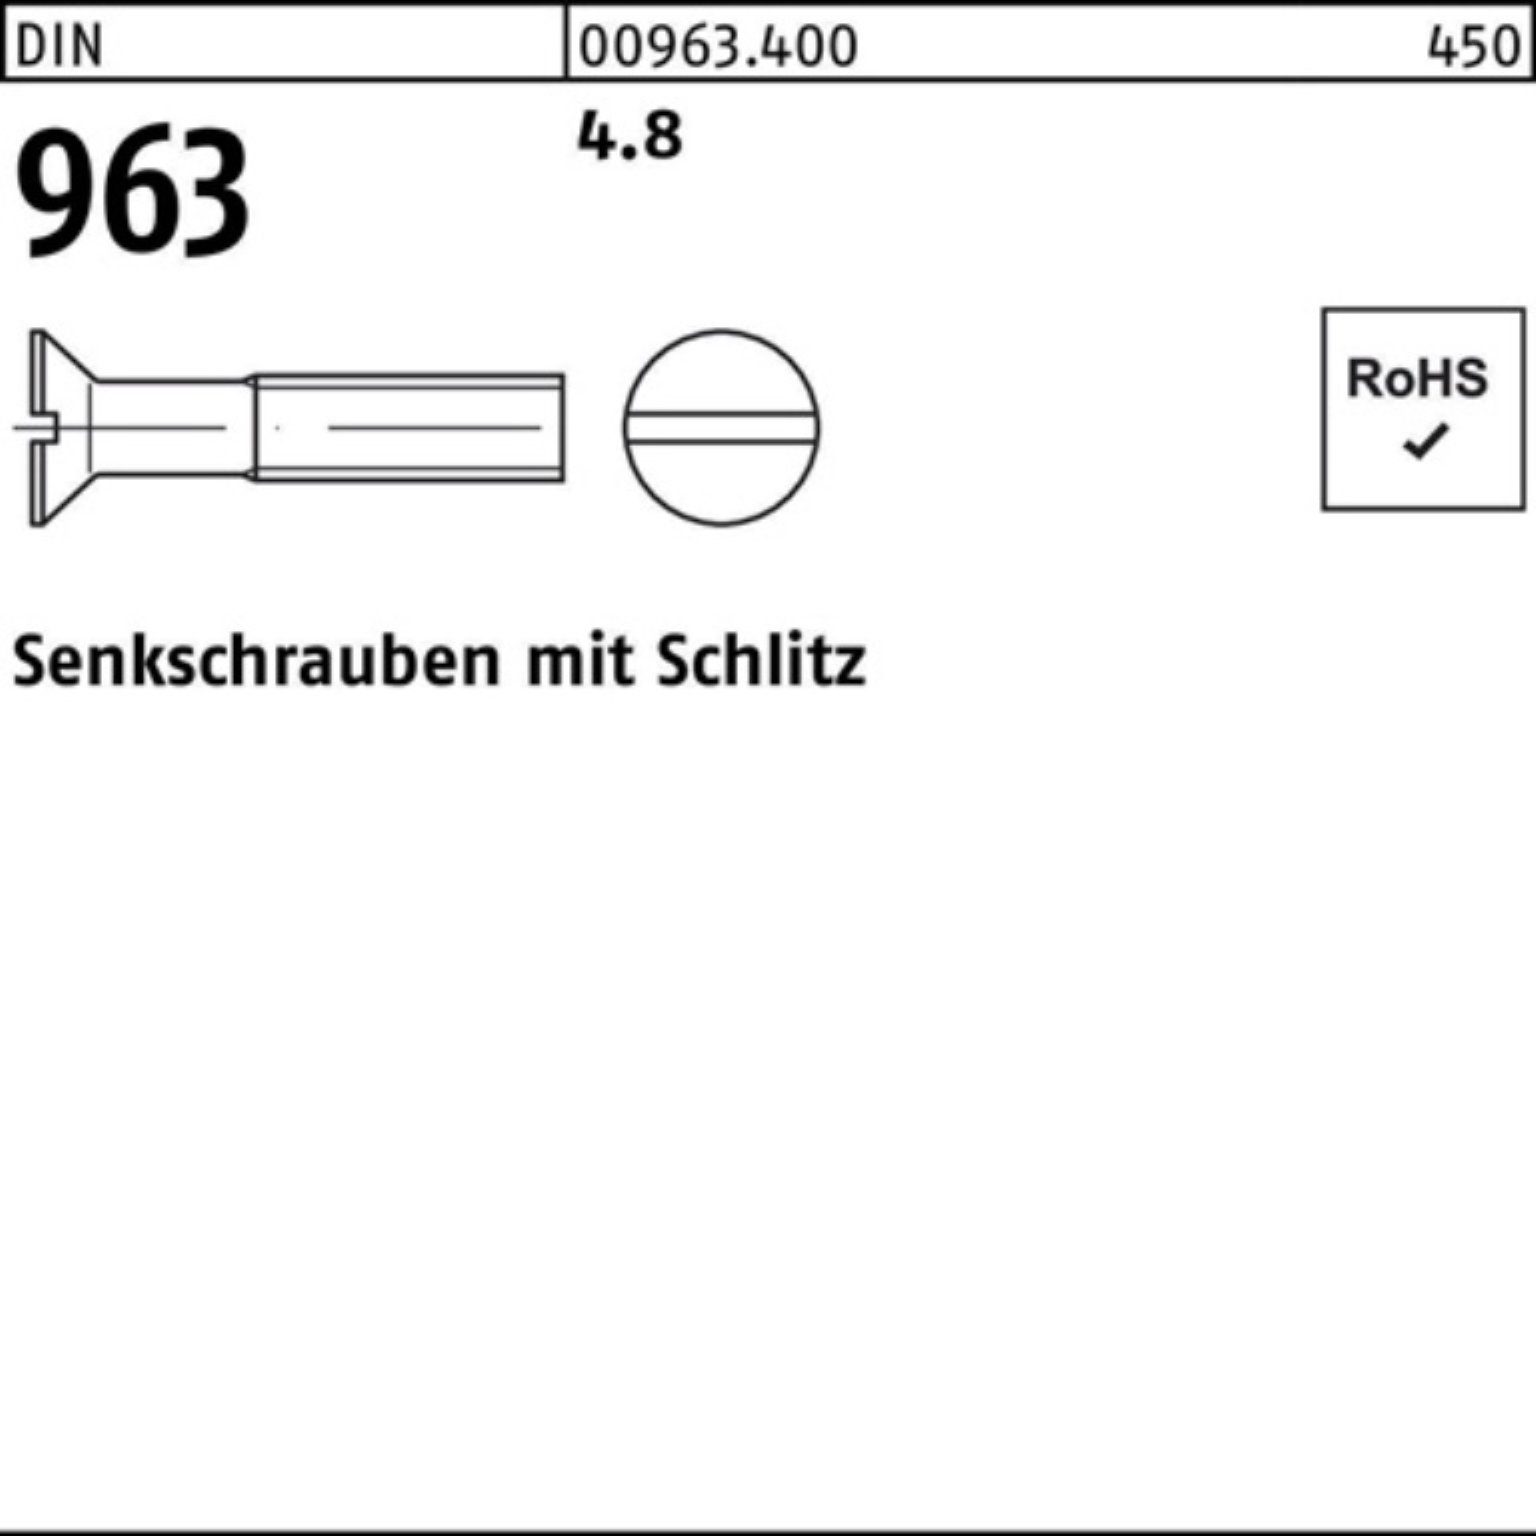 Reyher Senkschraube 1000er Pack Senkschraube DIN M5x 96 Schlitz DIN Stück 4.8 16 1000 963